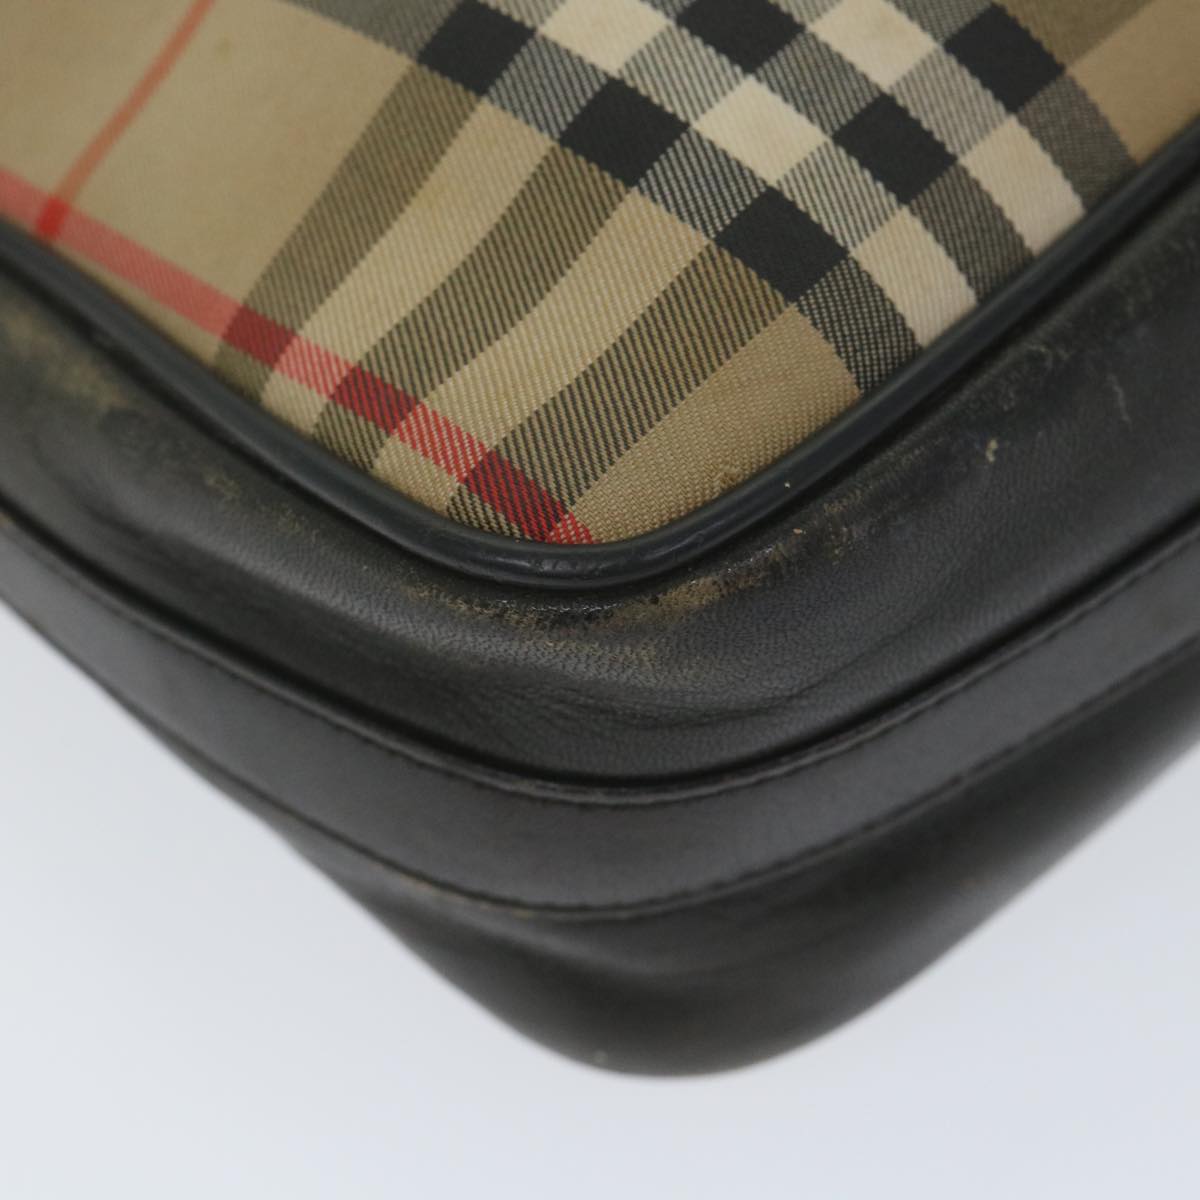 Burberrys Nova Check Shoulder Bag Canvas Leather Beige Black Auth 58609